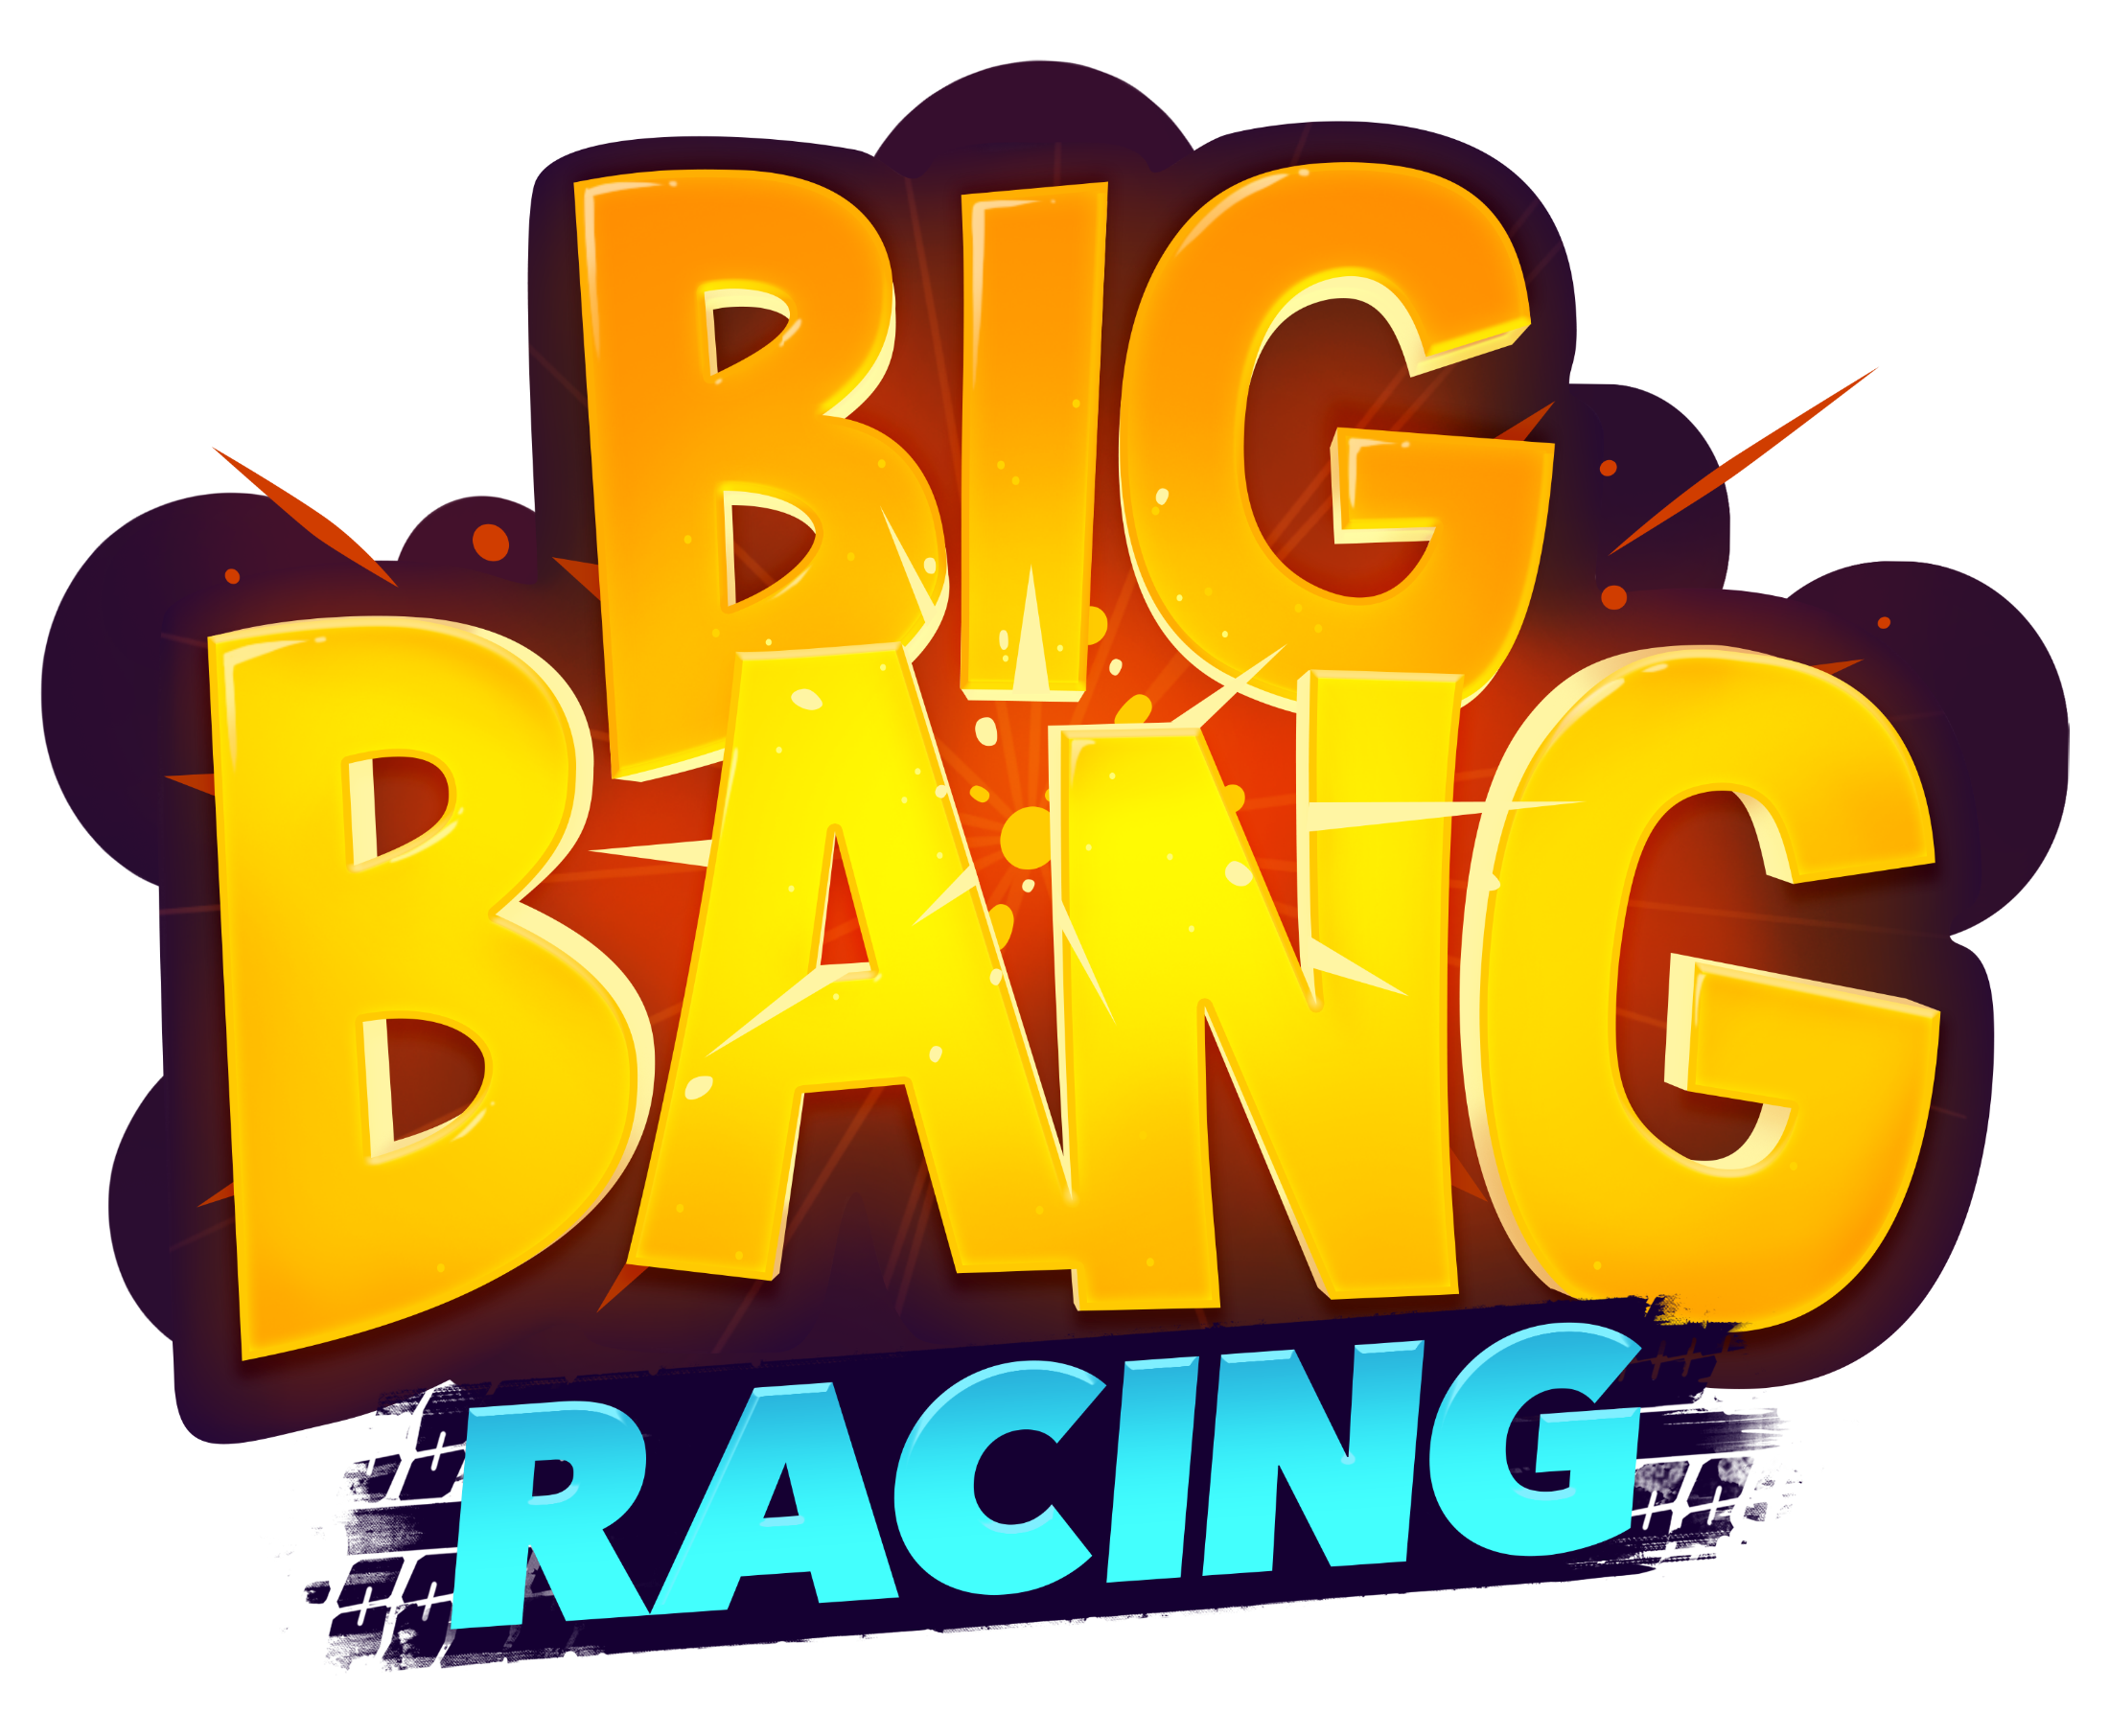 Big Bang racing